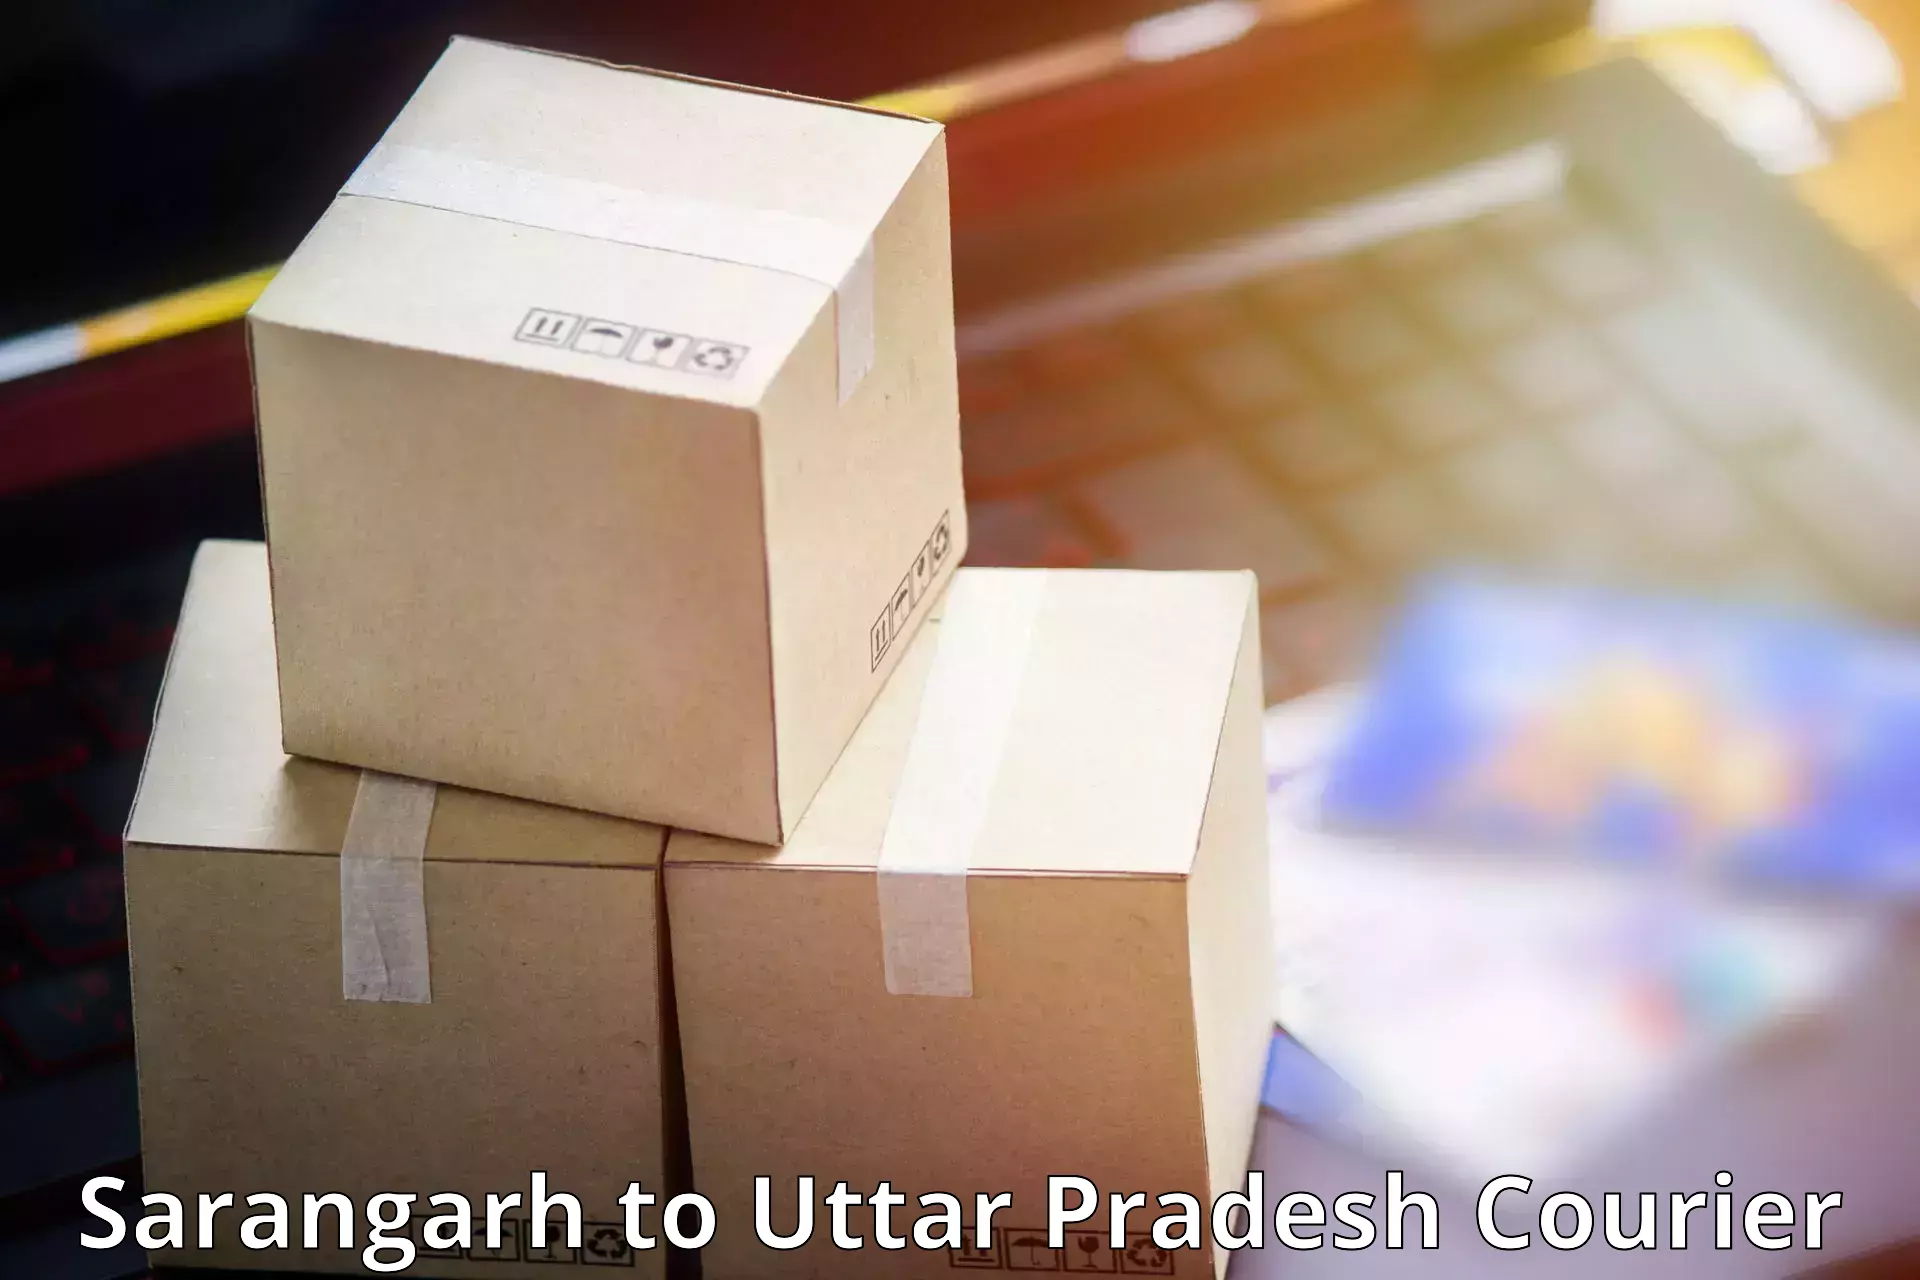 24-hour courier service Sarangarh to Jalesar